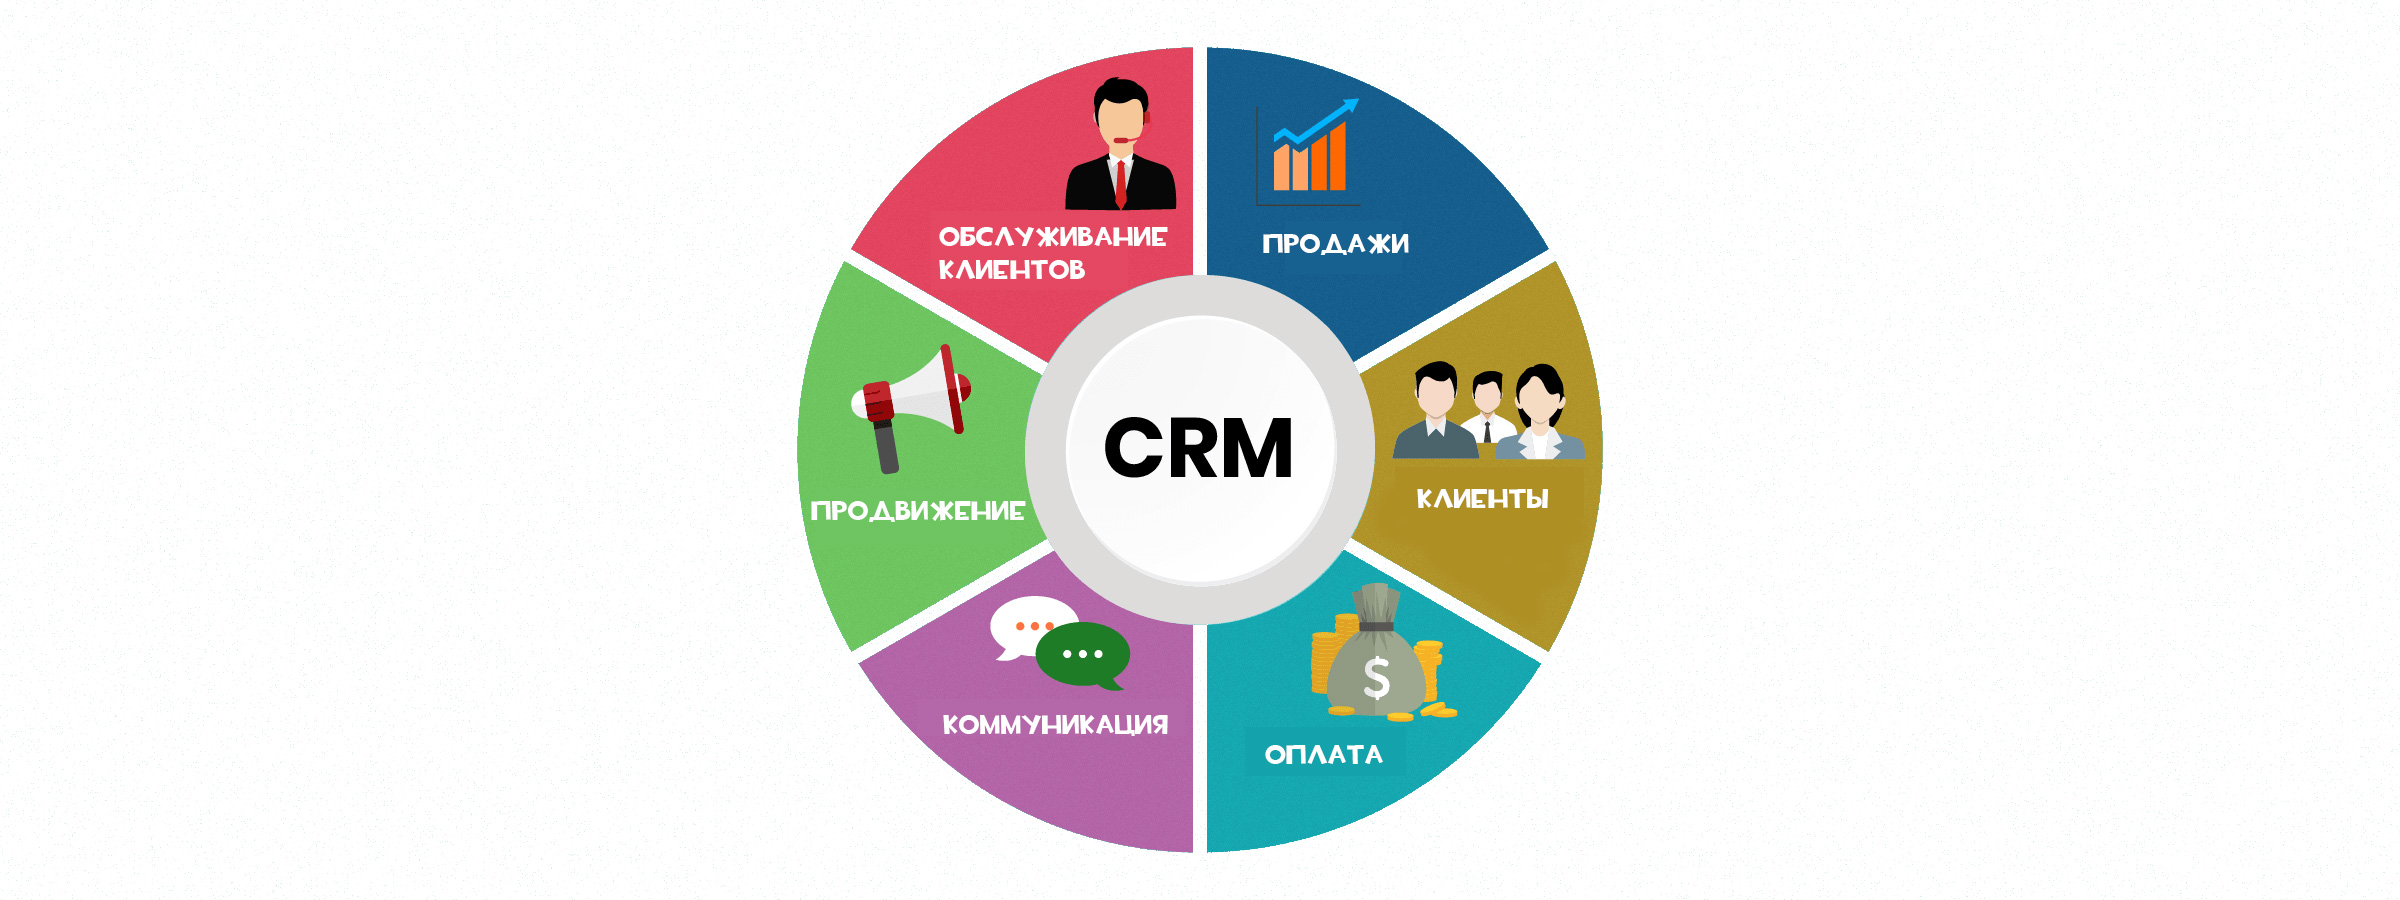 Качество данных клиентов. Система управления взаимоотношениями с клиентами CRM система. CRM системы управления взаимоотношениями с клиентами. GRM - система управления ЗВАИМООТНОШЕНИЯ С клиентами. Управление взаимоотношениями с клиентами CRM.